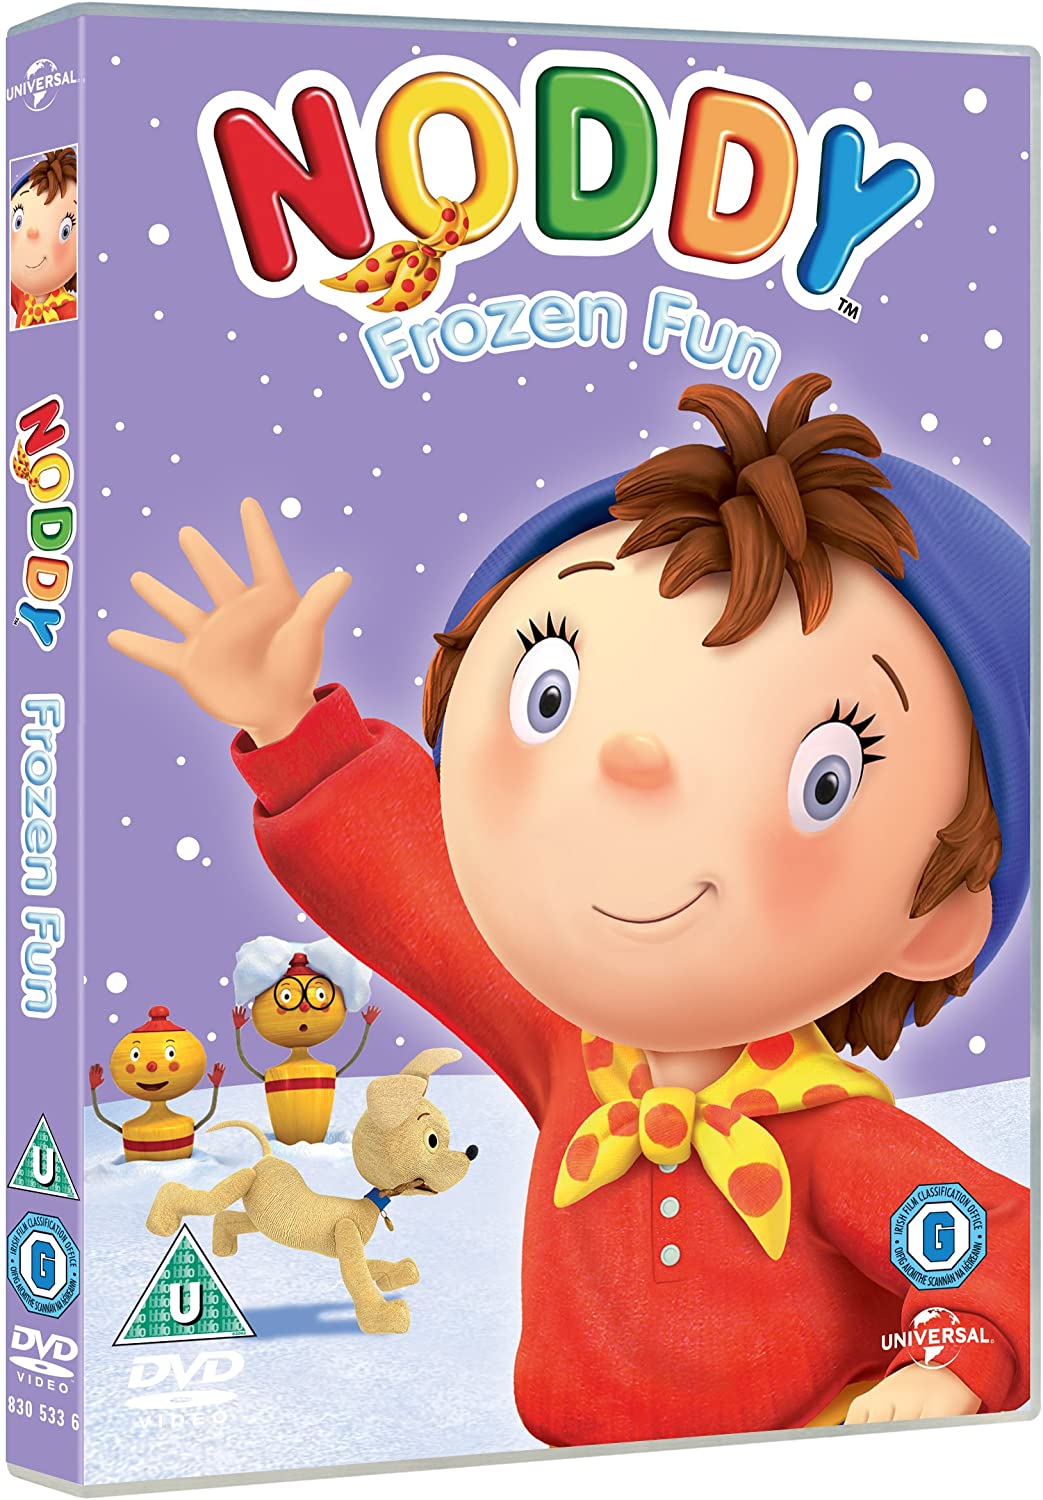 Noddy in Toyland - Frozen Fun [2009] - Animation [DVD]